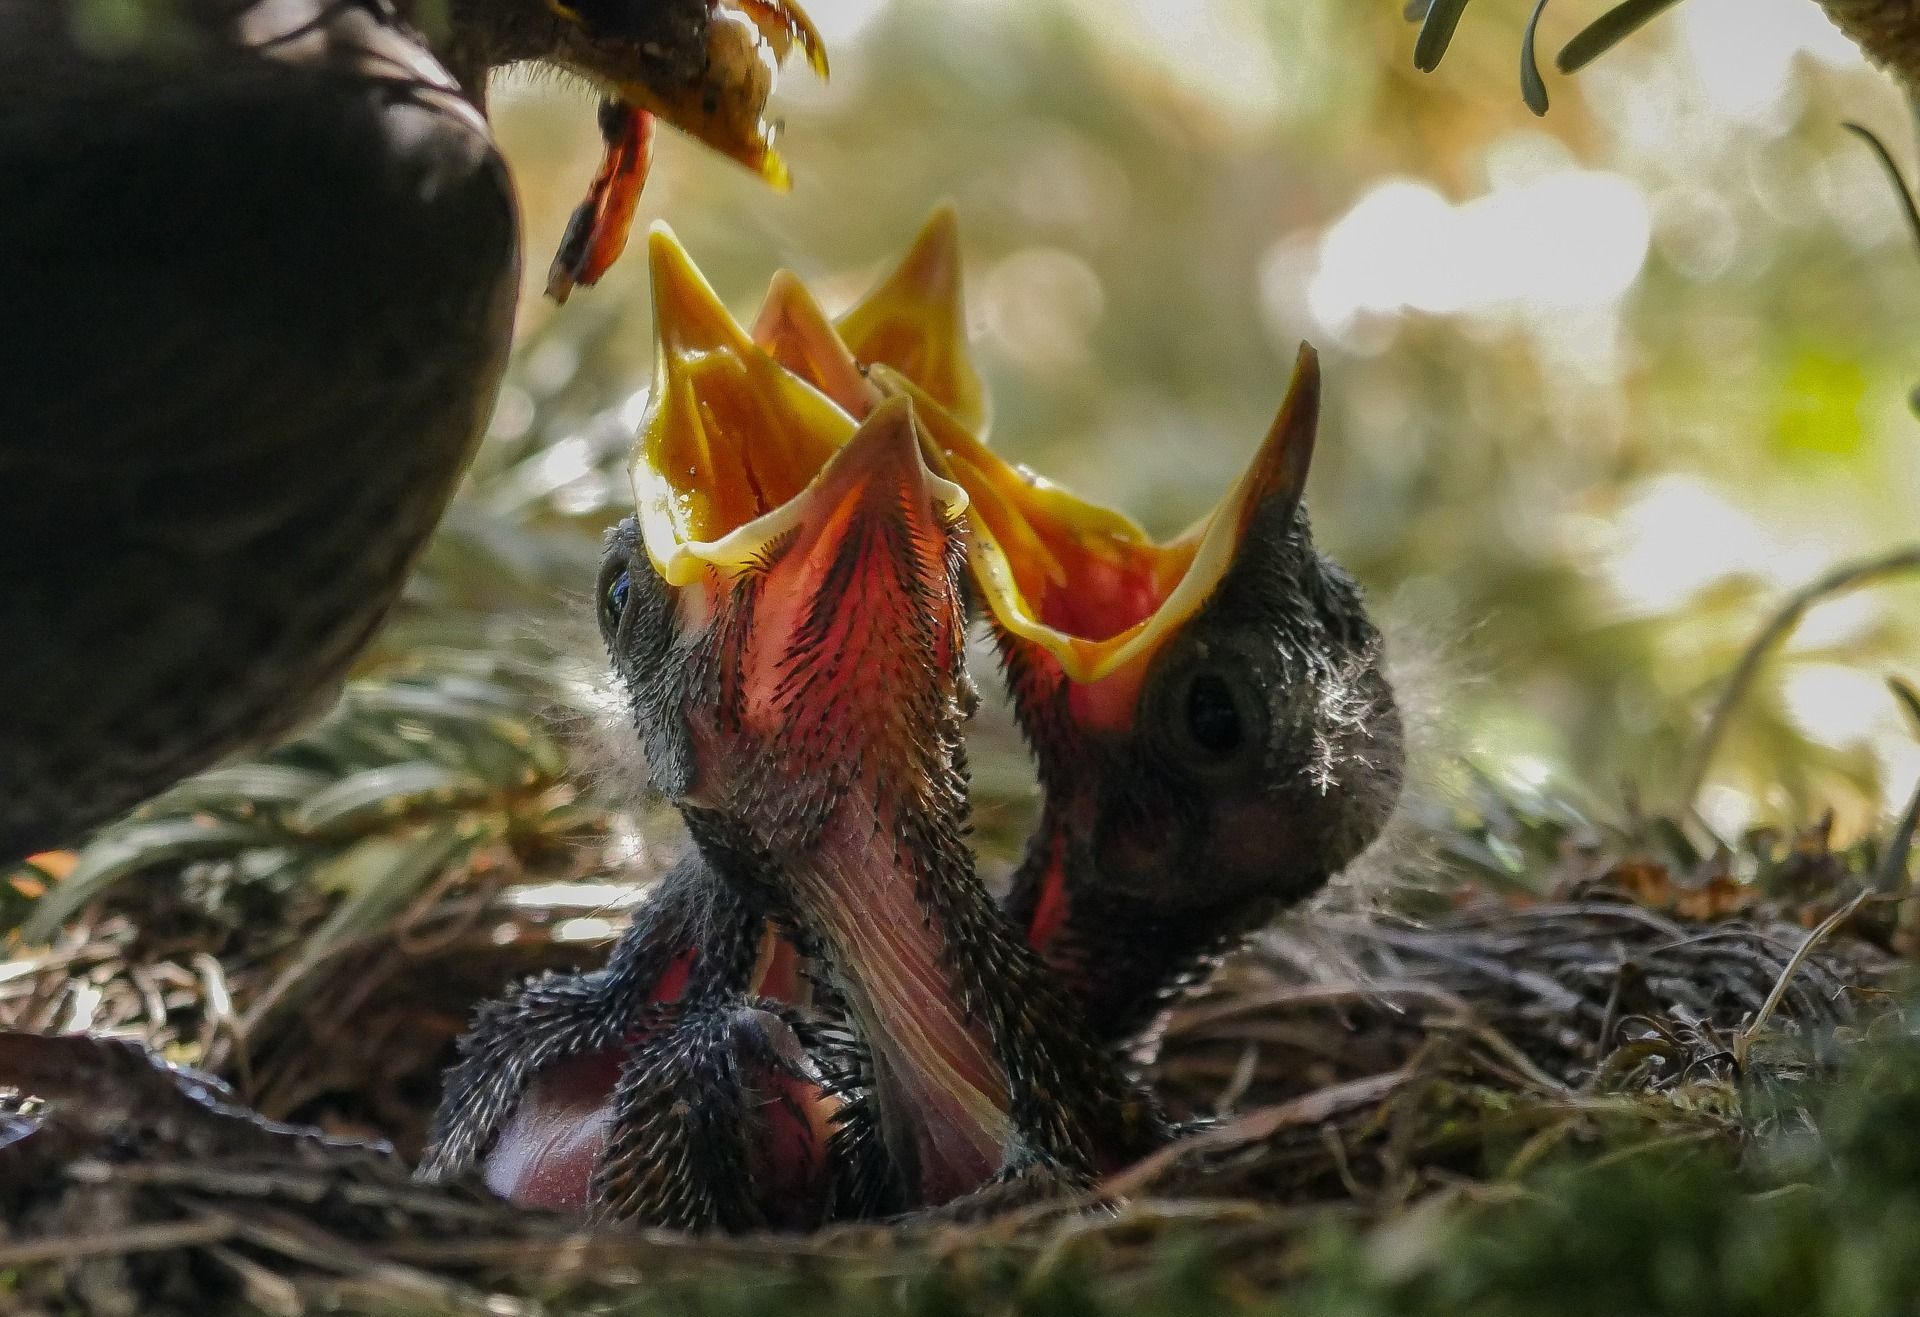 Robin nestlings being fed